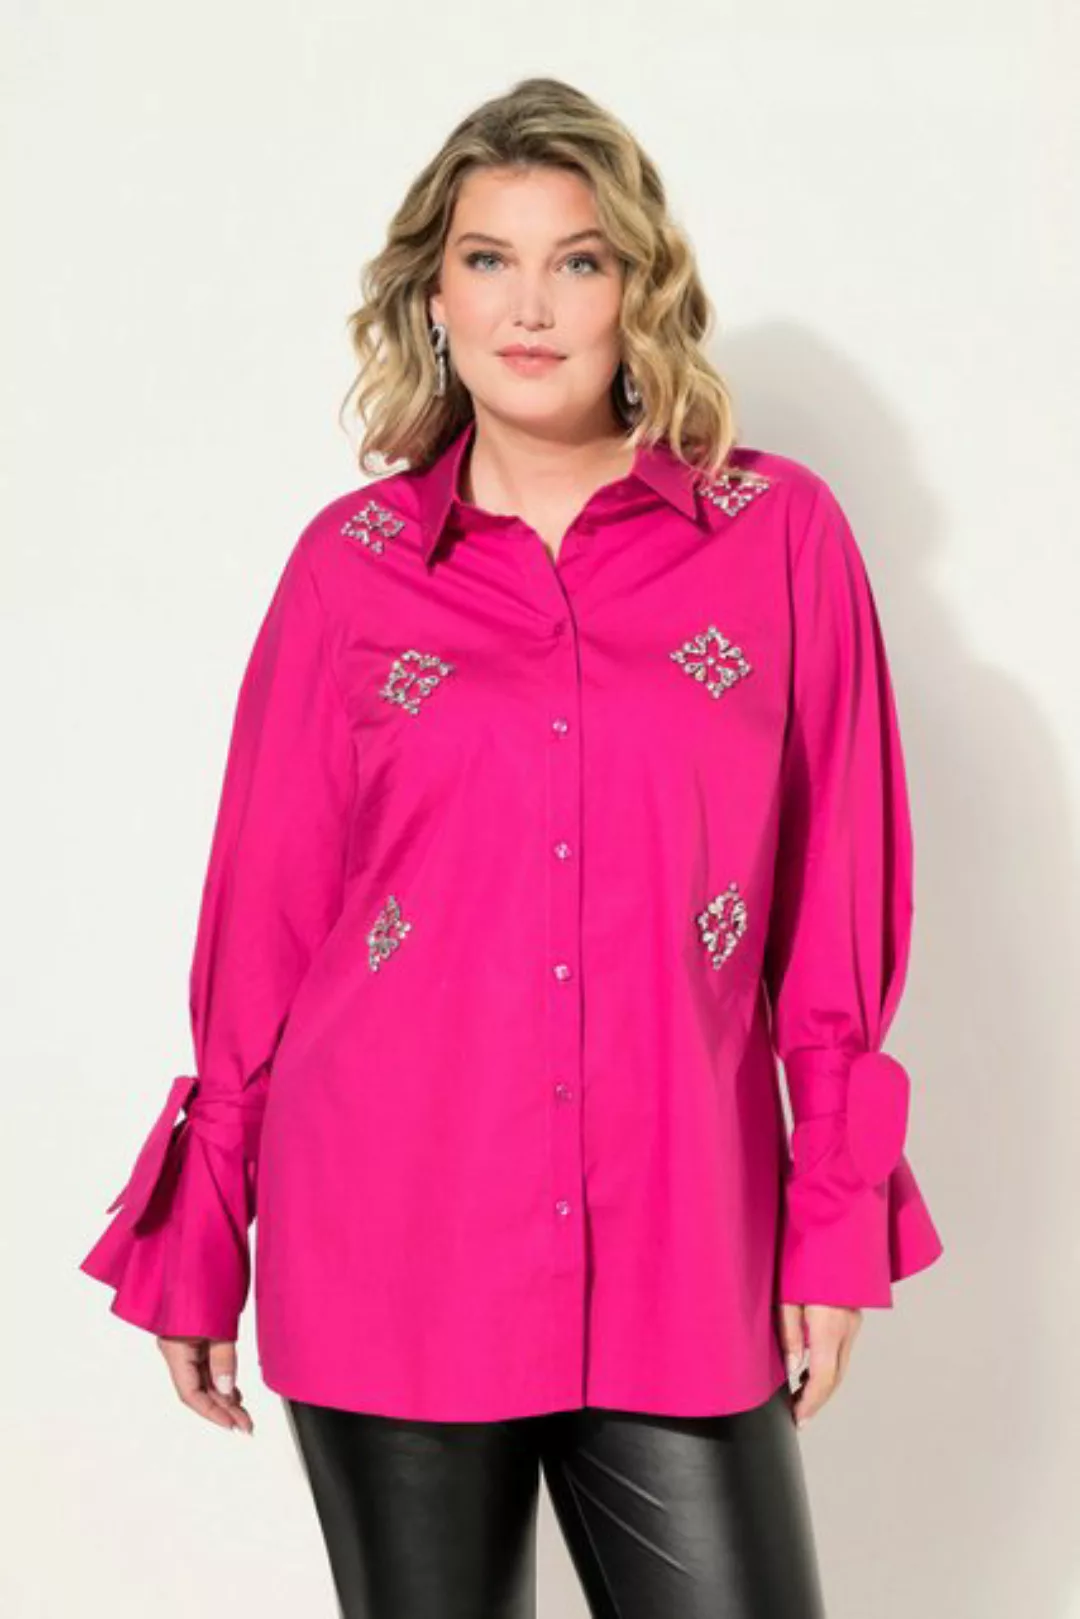 MIAMODA Hemdbluse Bluse A-Line Ziersteinchen günstig online kaufen